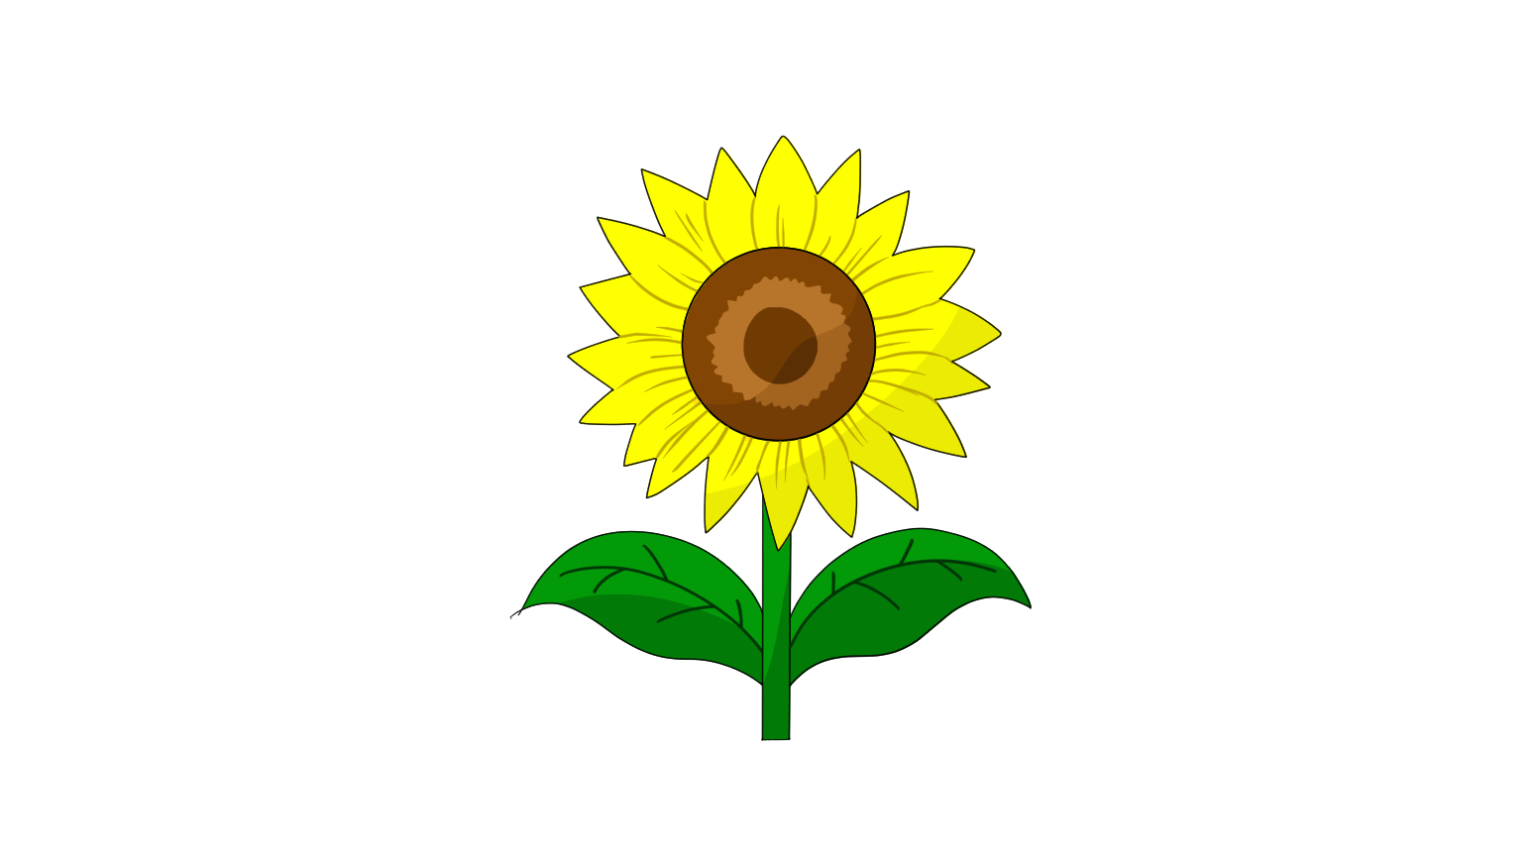 sunflower in full bloom